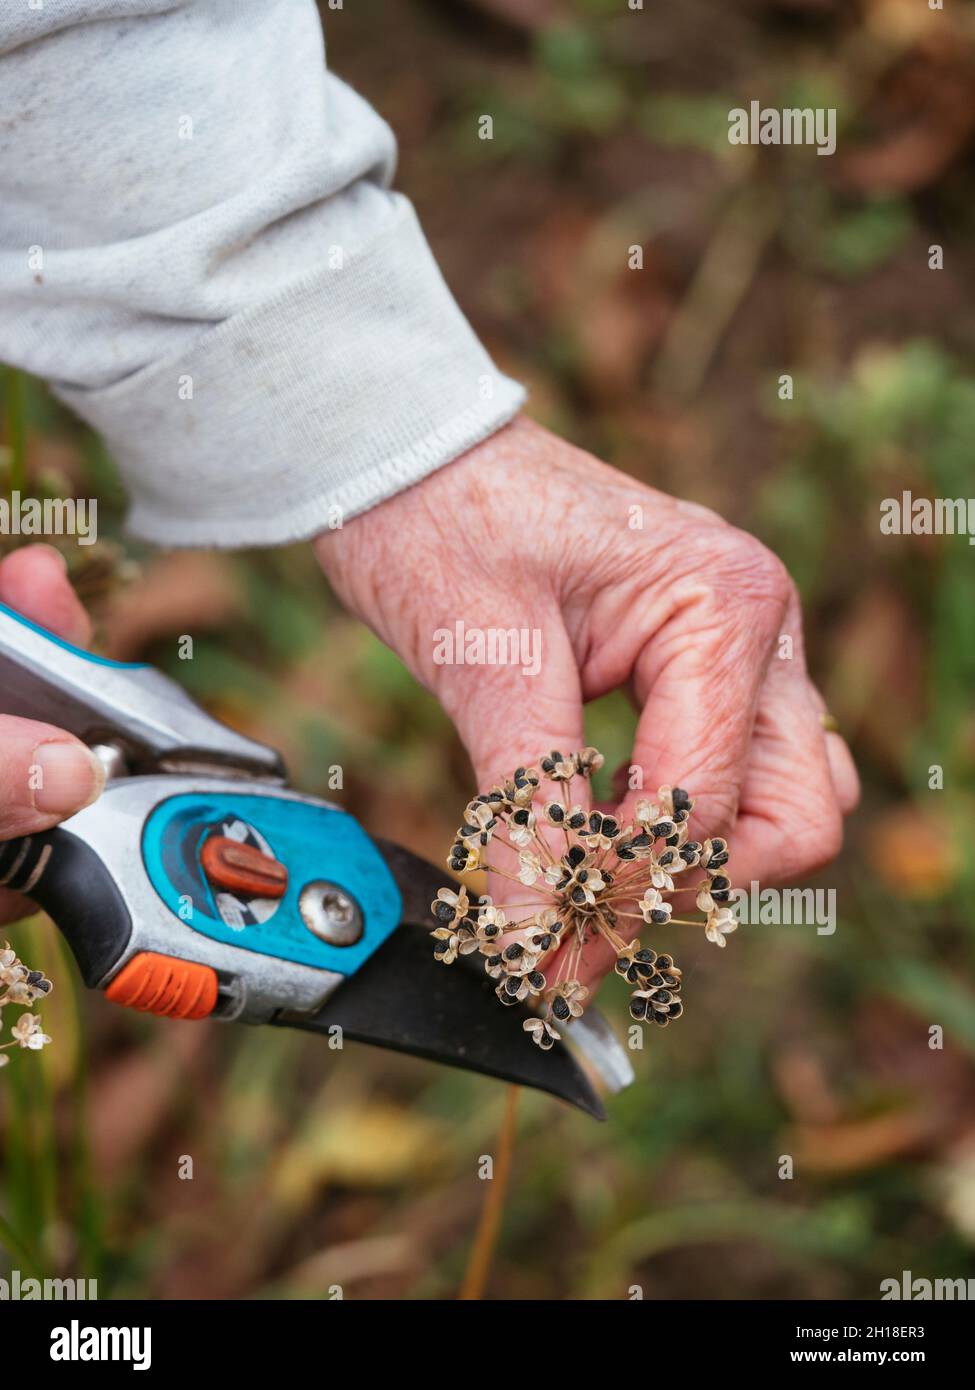 Giardiniere che raccoglie i semi di erba cipollina (Allium tuberosum). Foto Stock